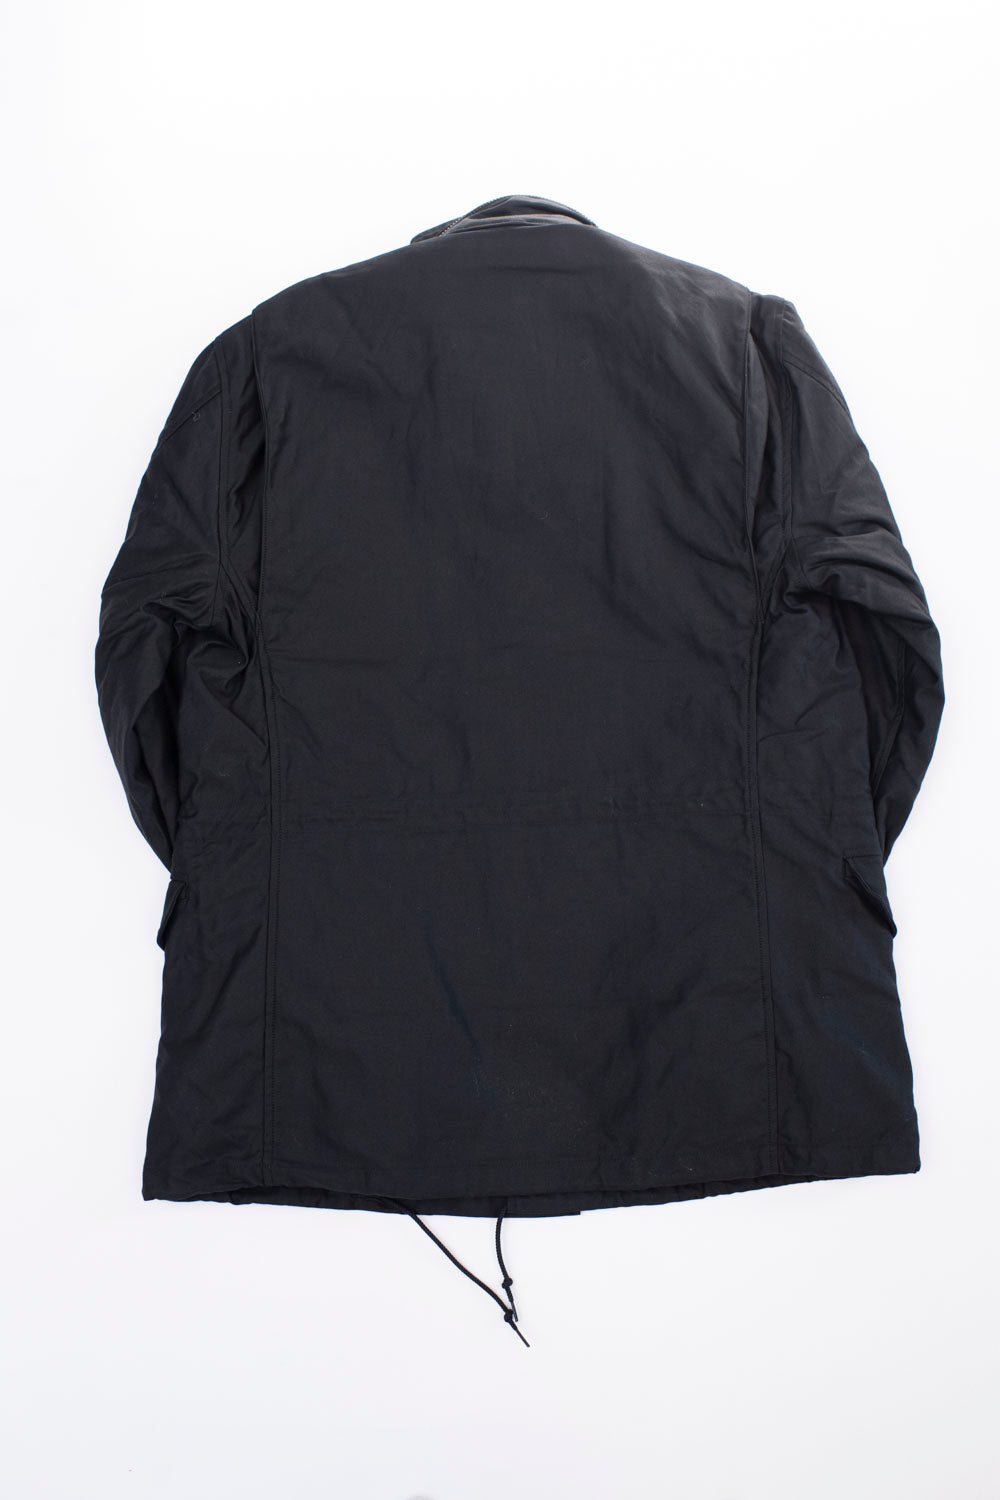 01-6065-61 - M65 Field Jacket Reverse Sateen - All Black